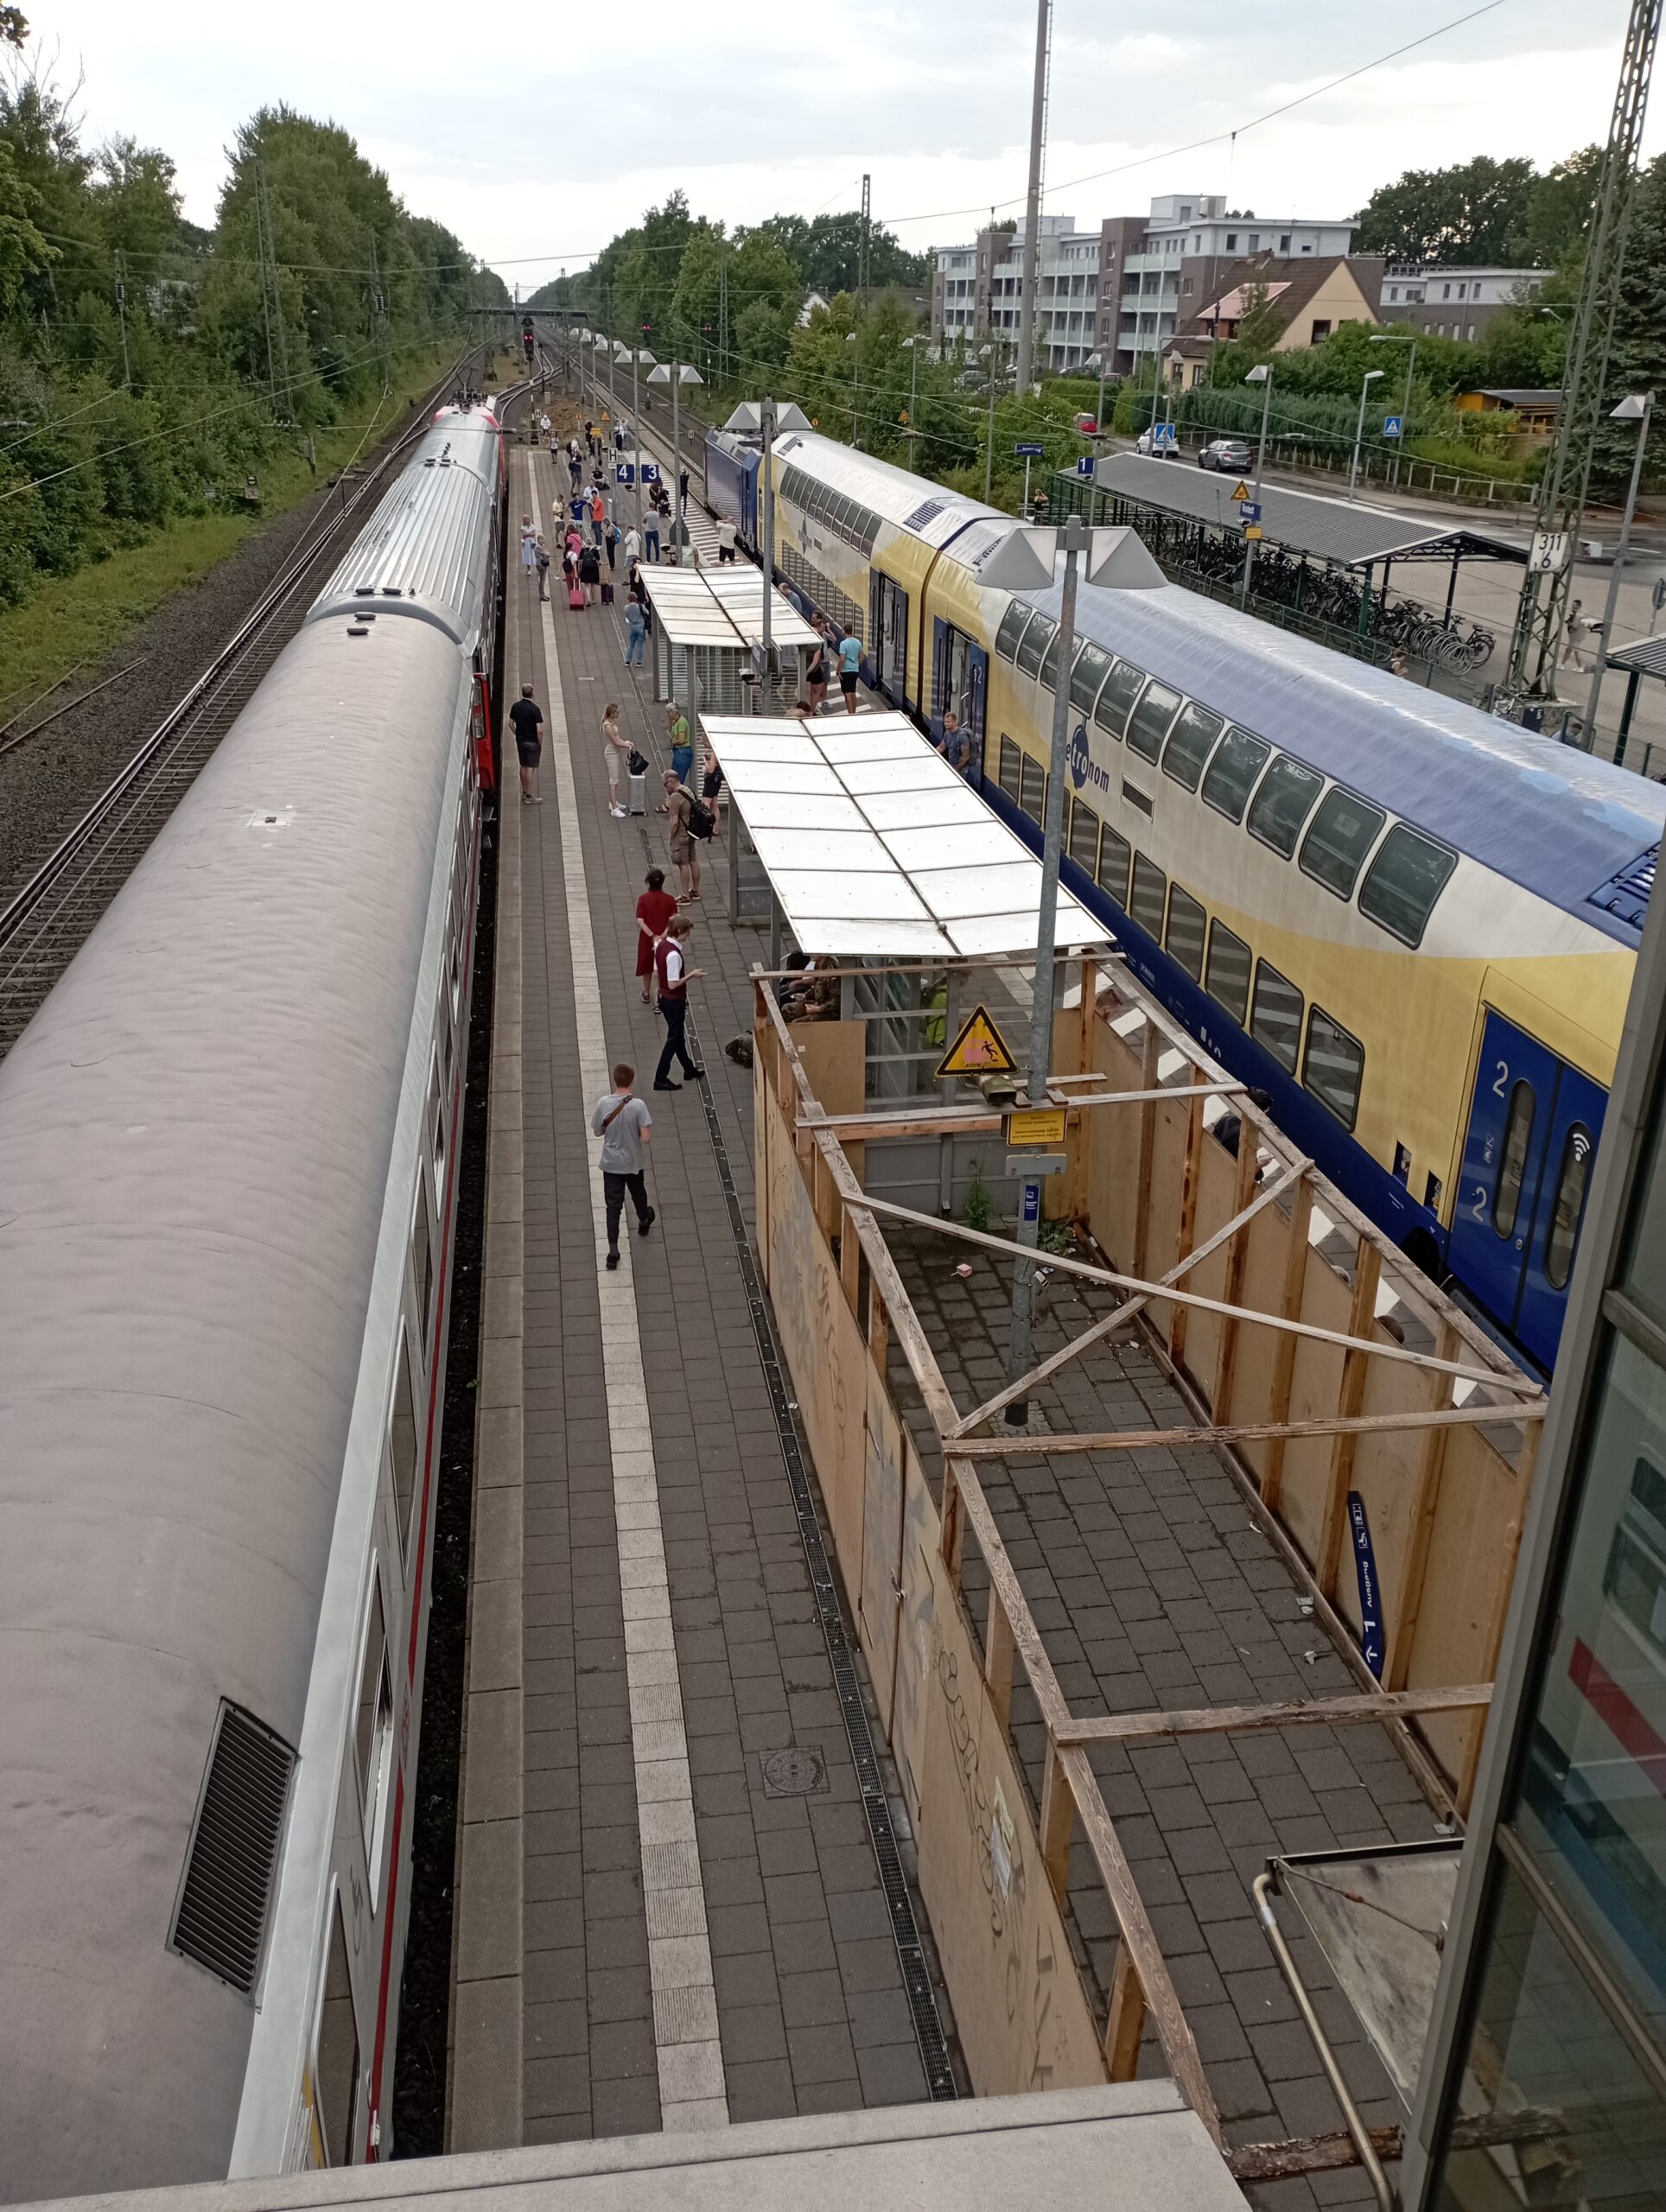 Am Bahnhof Tostedt stauen sich die Züge. Auf der Strecke Hamburg-Bremen waren zuvor Äste auf die Oberleitung gefallen.